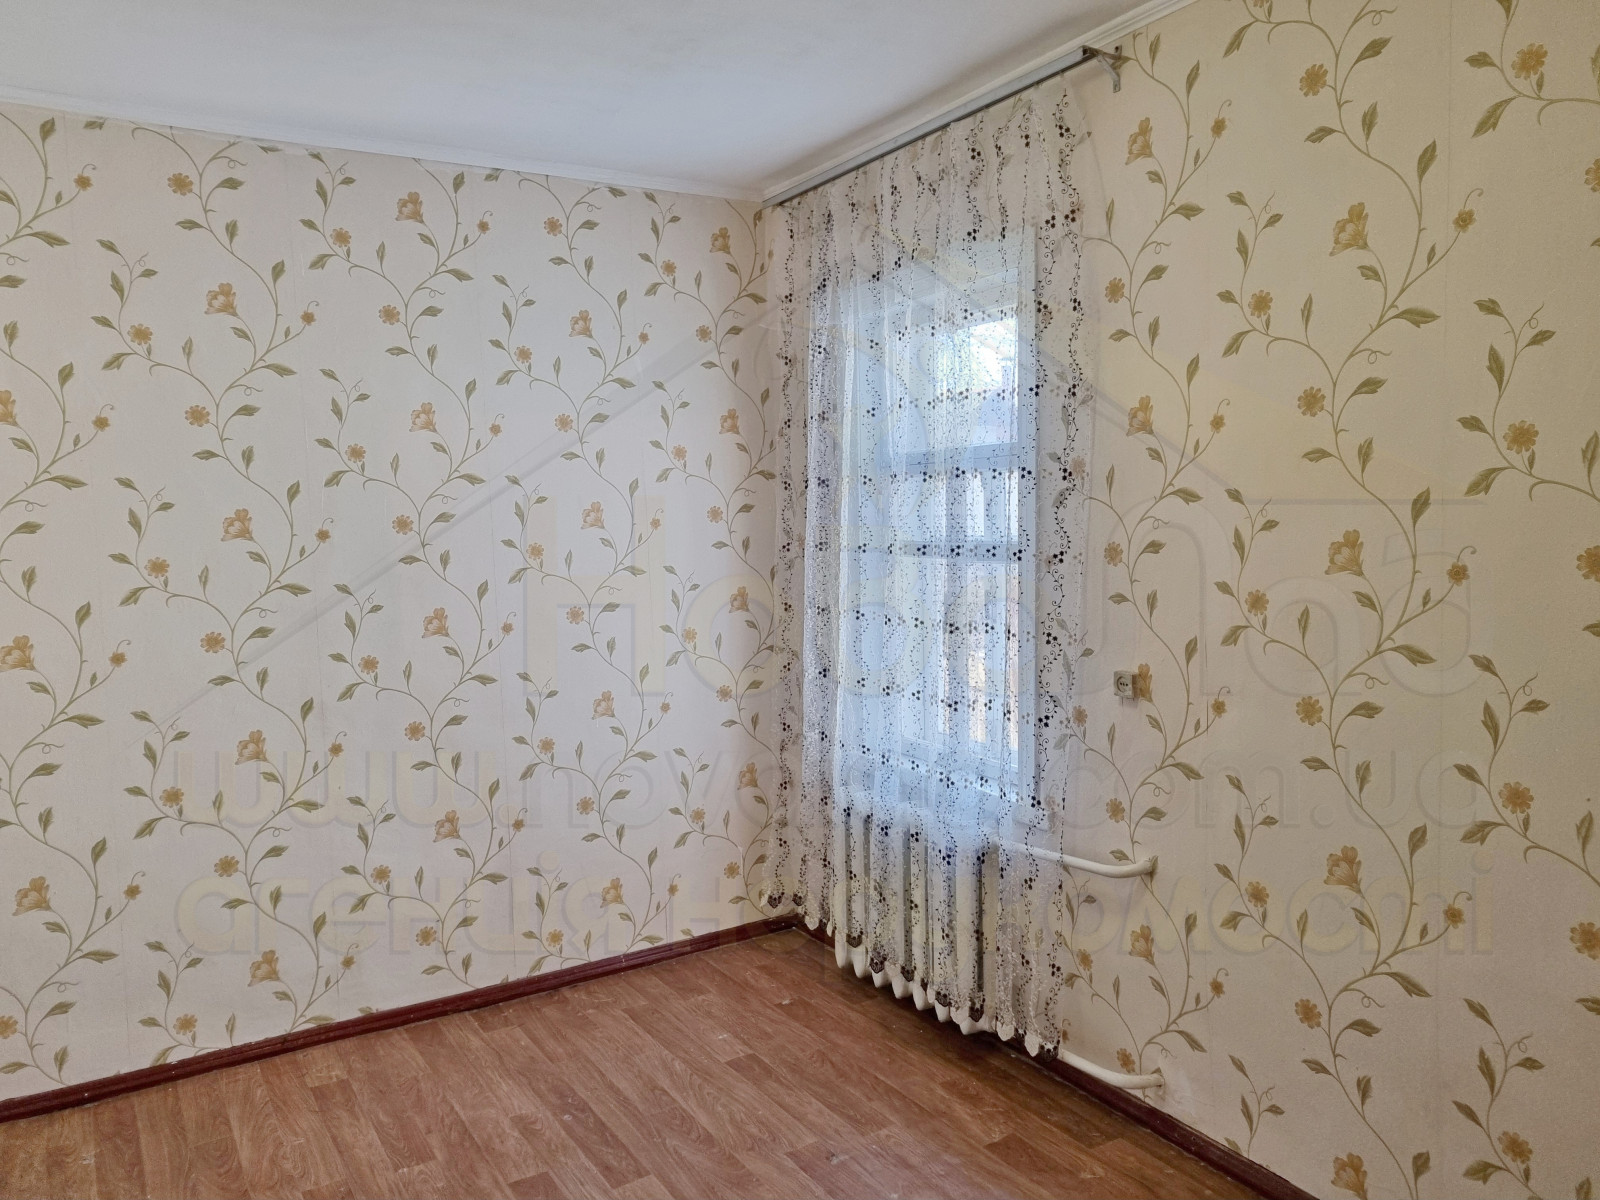 2 кімнатна частина будинку 51 м2 зі зручностями в районі Лісковиці